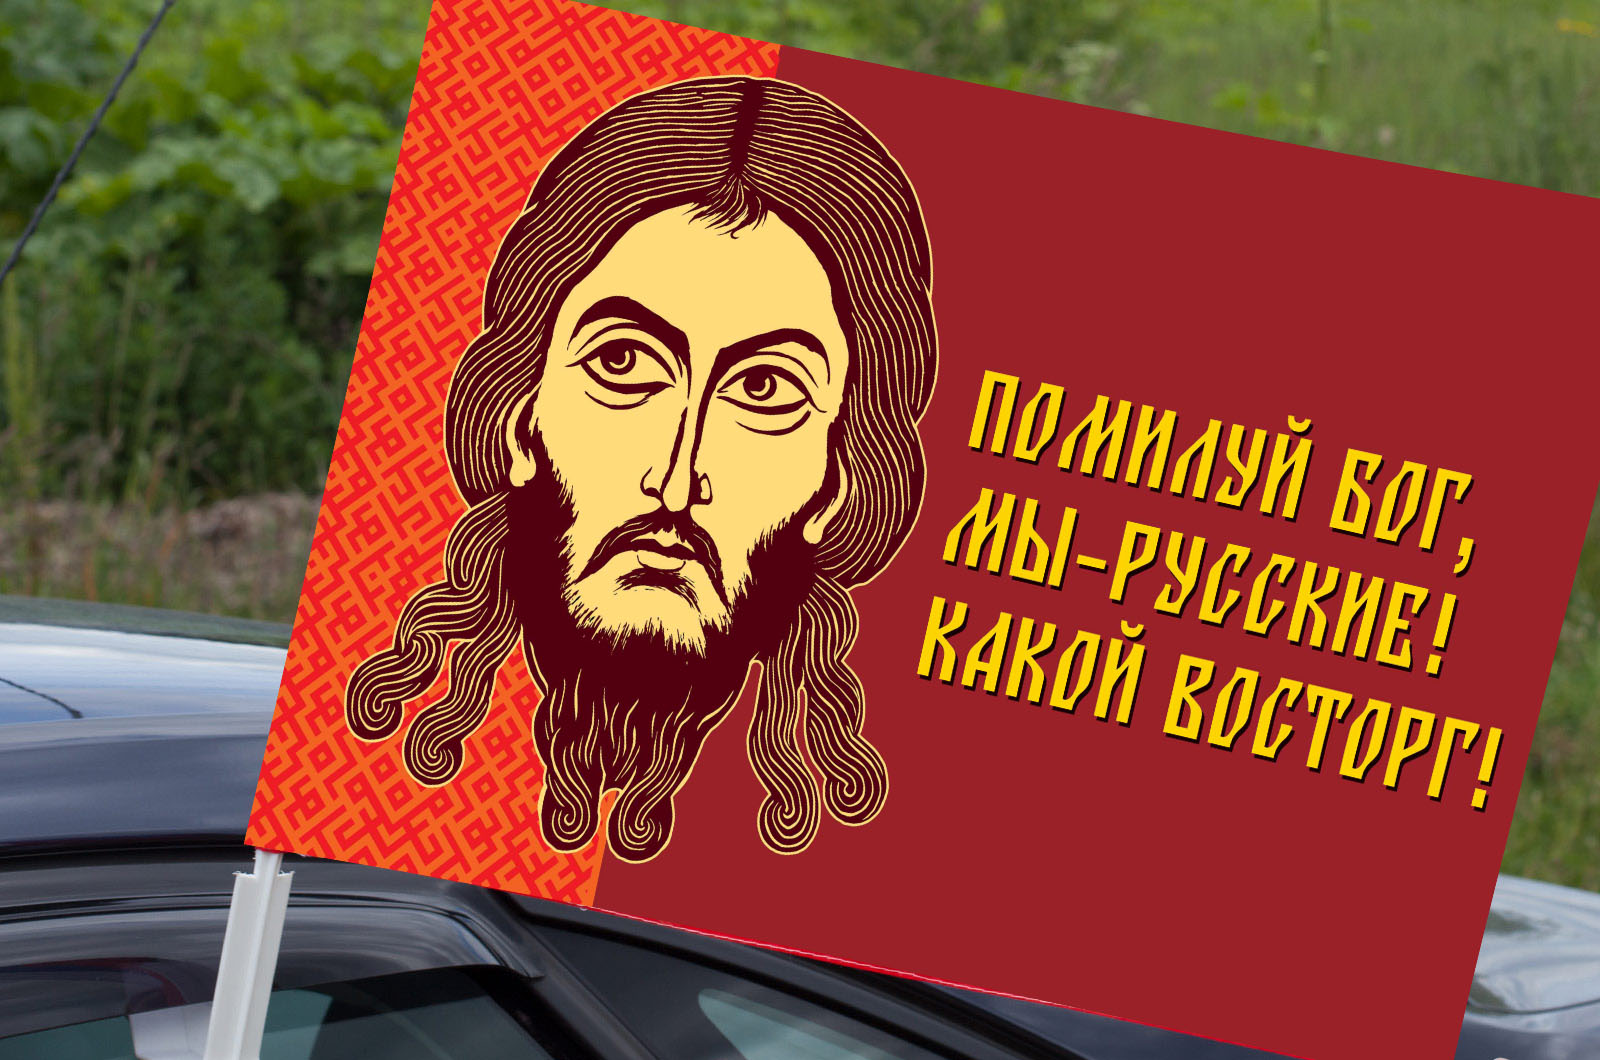 Автомобильный флаг "Помилуй Бог, мы – русские! Какой восторг!"